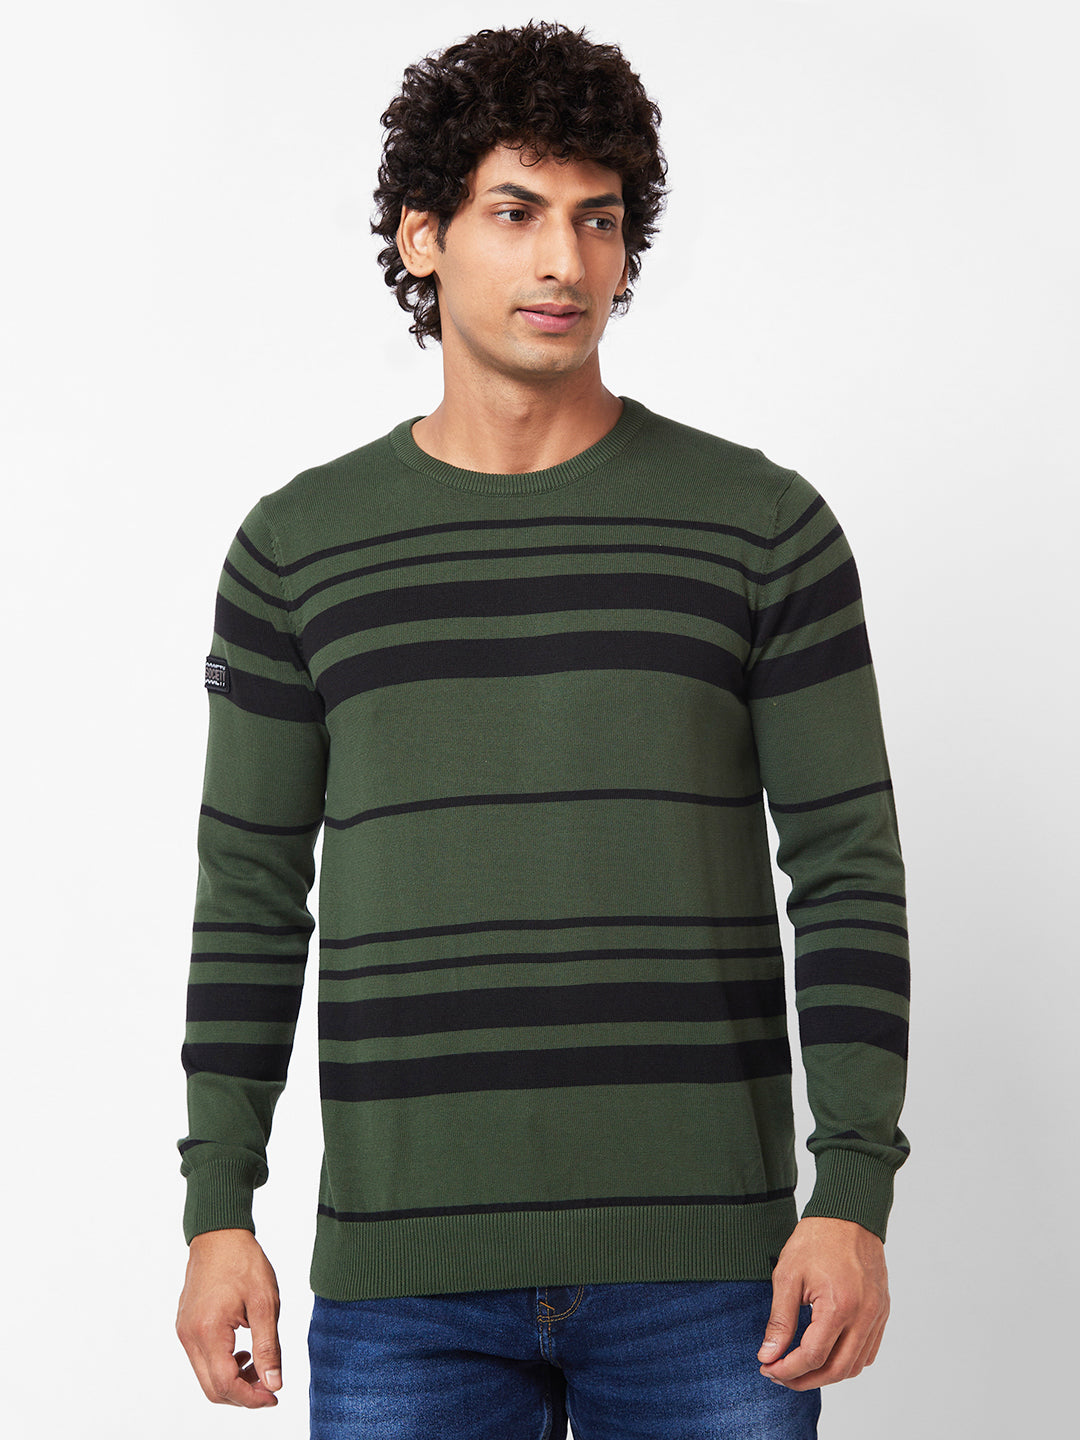 Spykar Collarless Full Sleeves Green Sweater For Men